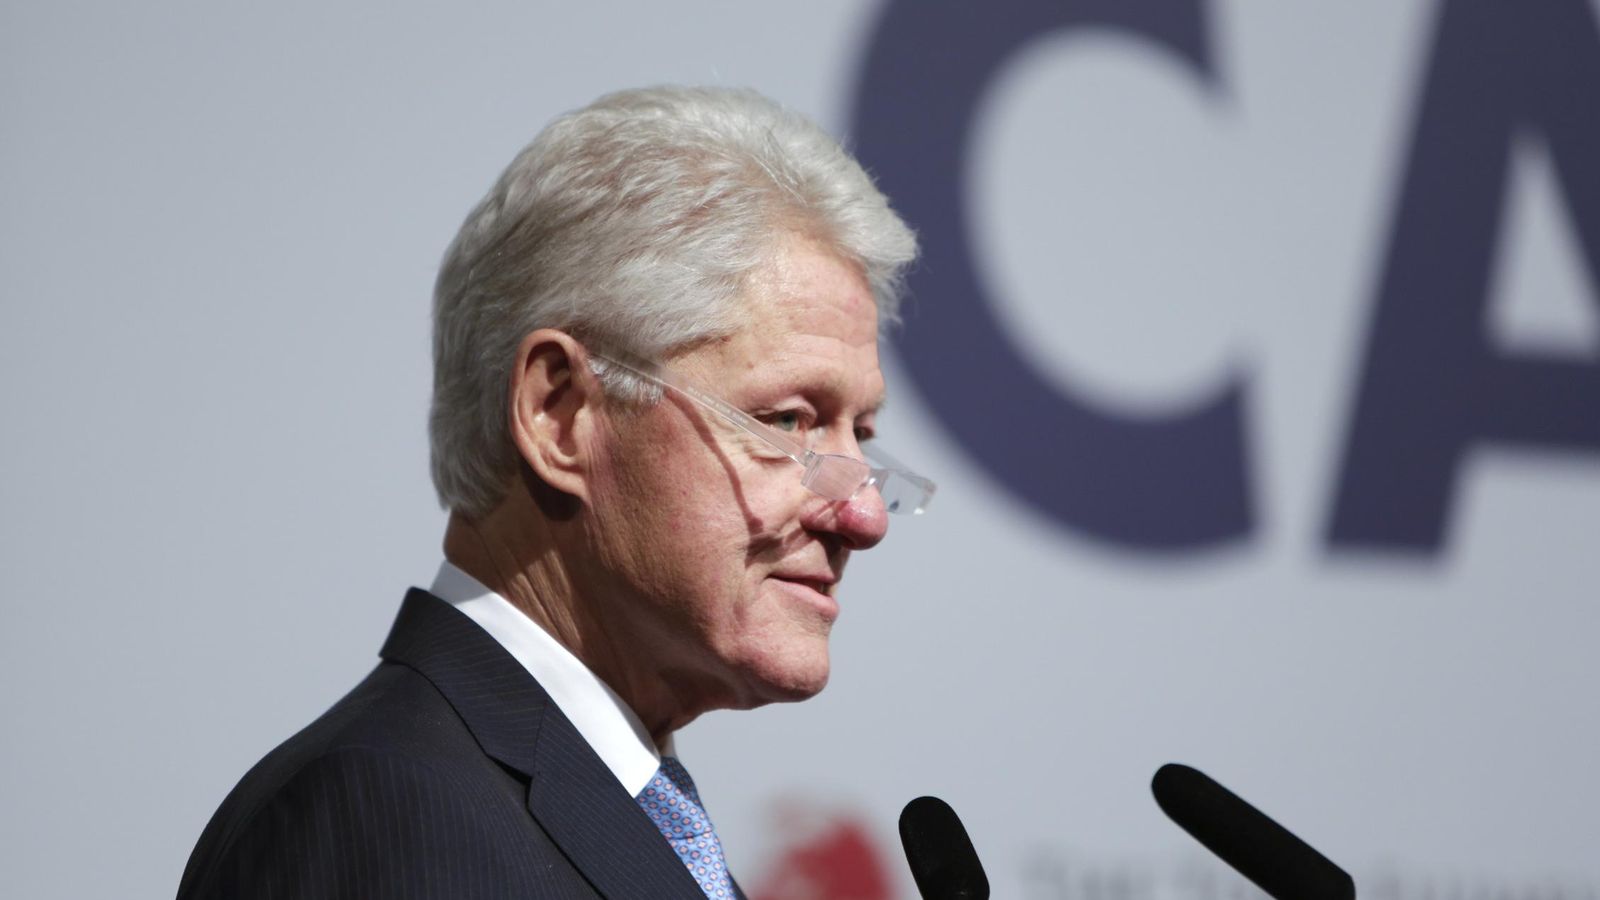 Foto: Bill Clinton da una charla en una conferencia sobre "capitalismo inclusivo" en Londres, en mayo de 2014 (Reuters)